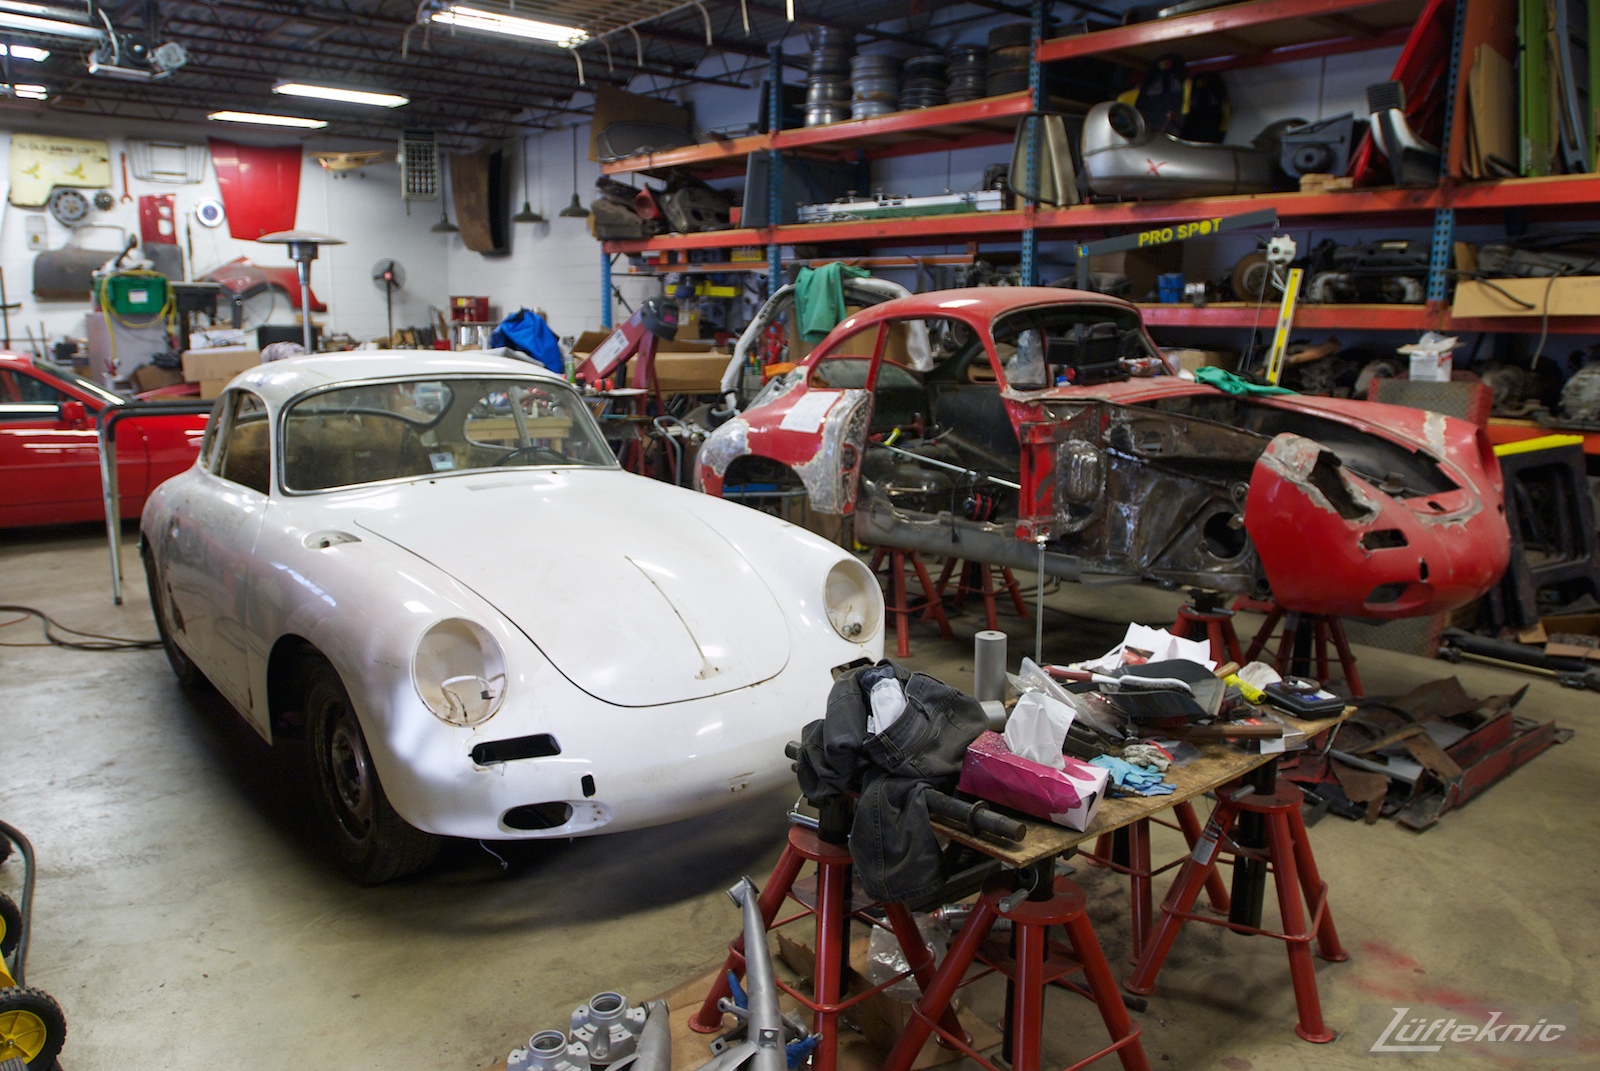 1964 Porsche 356SC restoration.